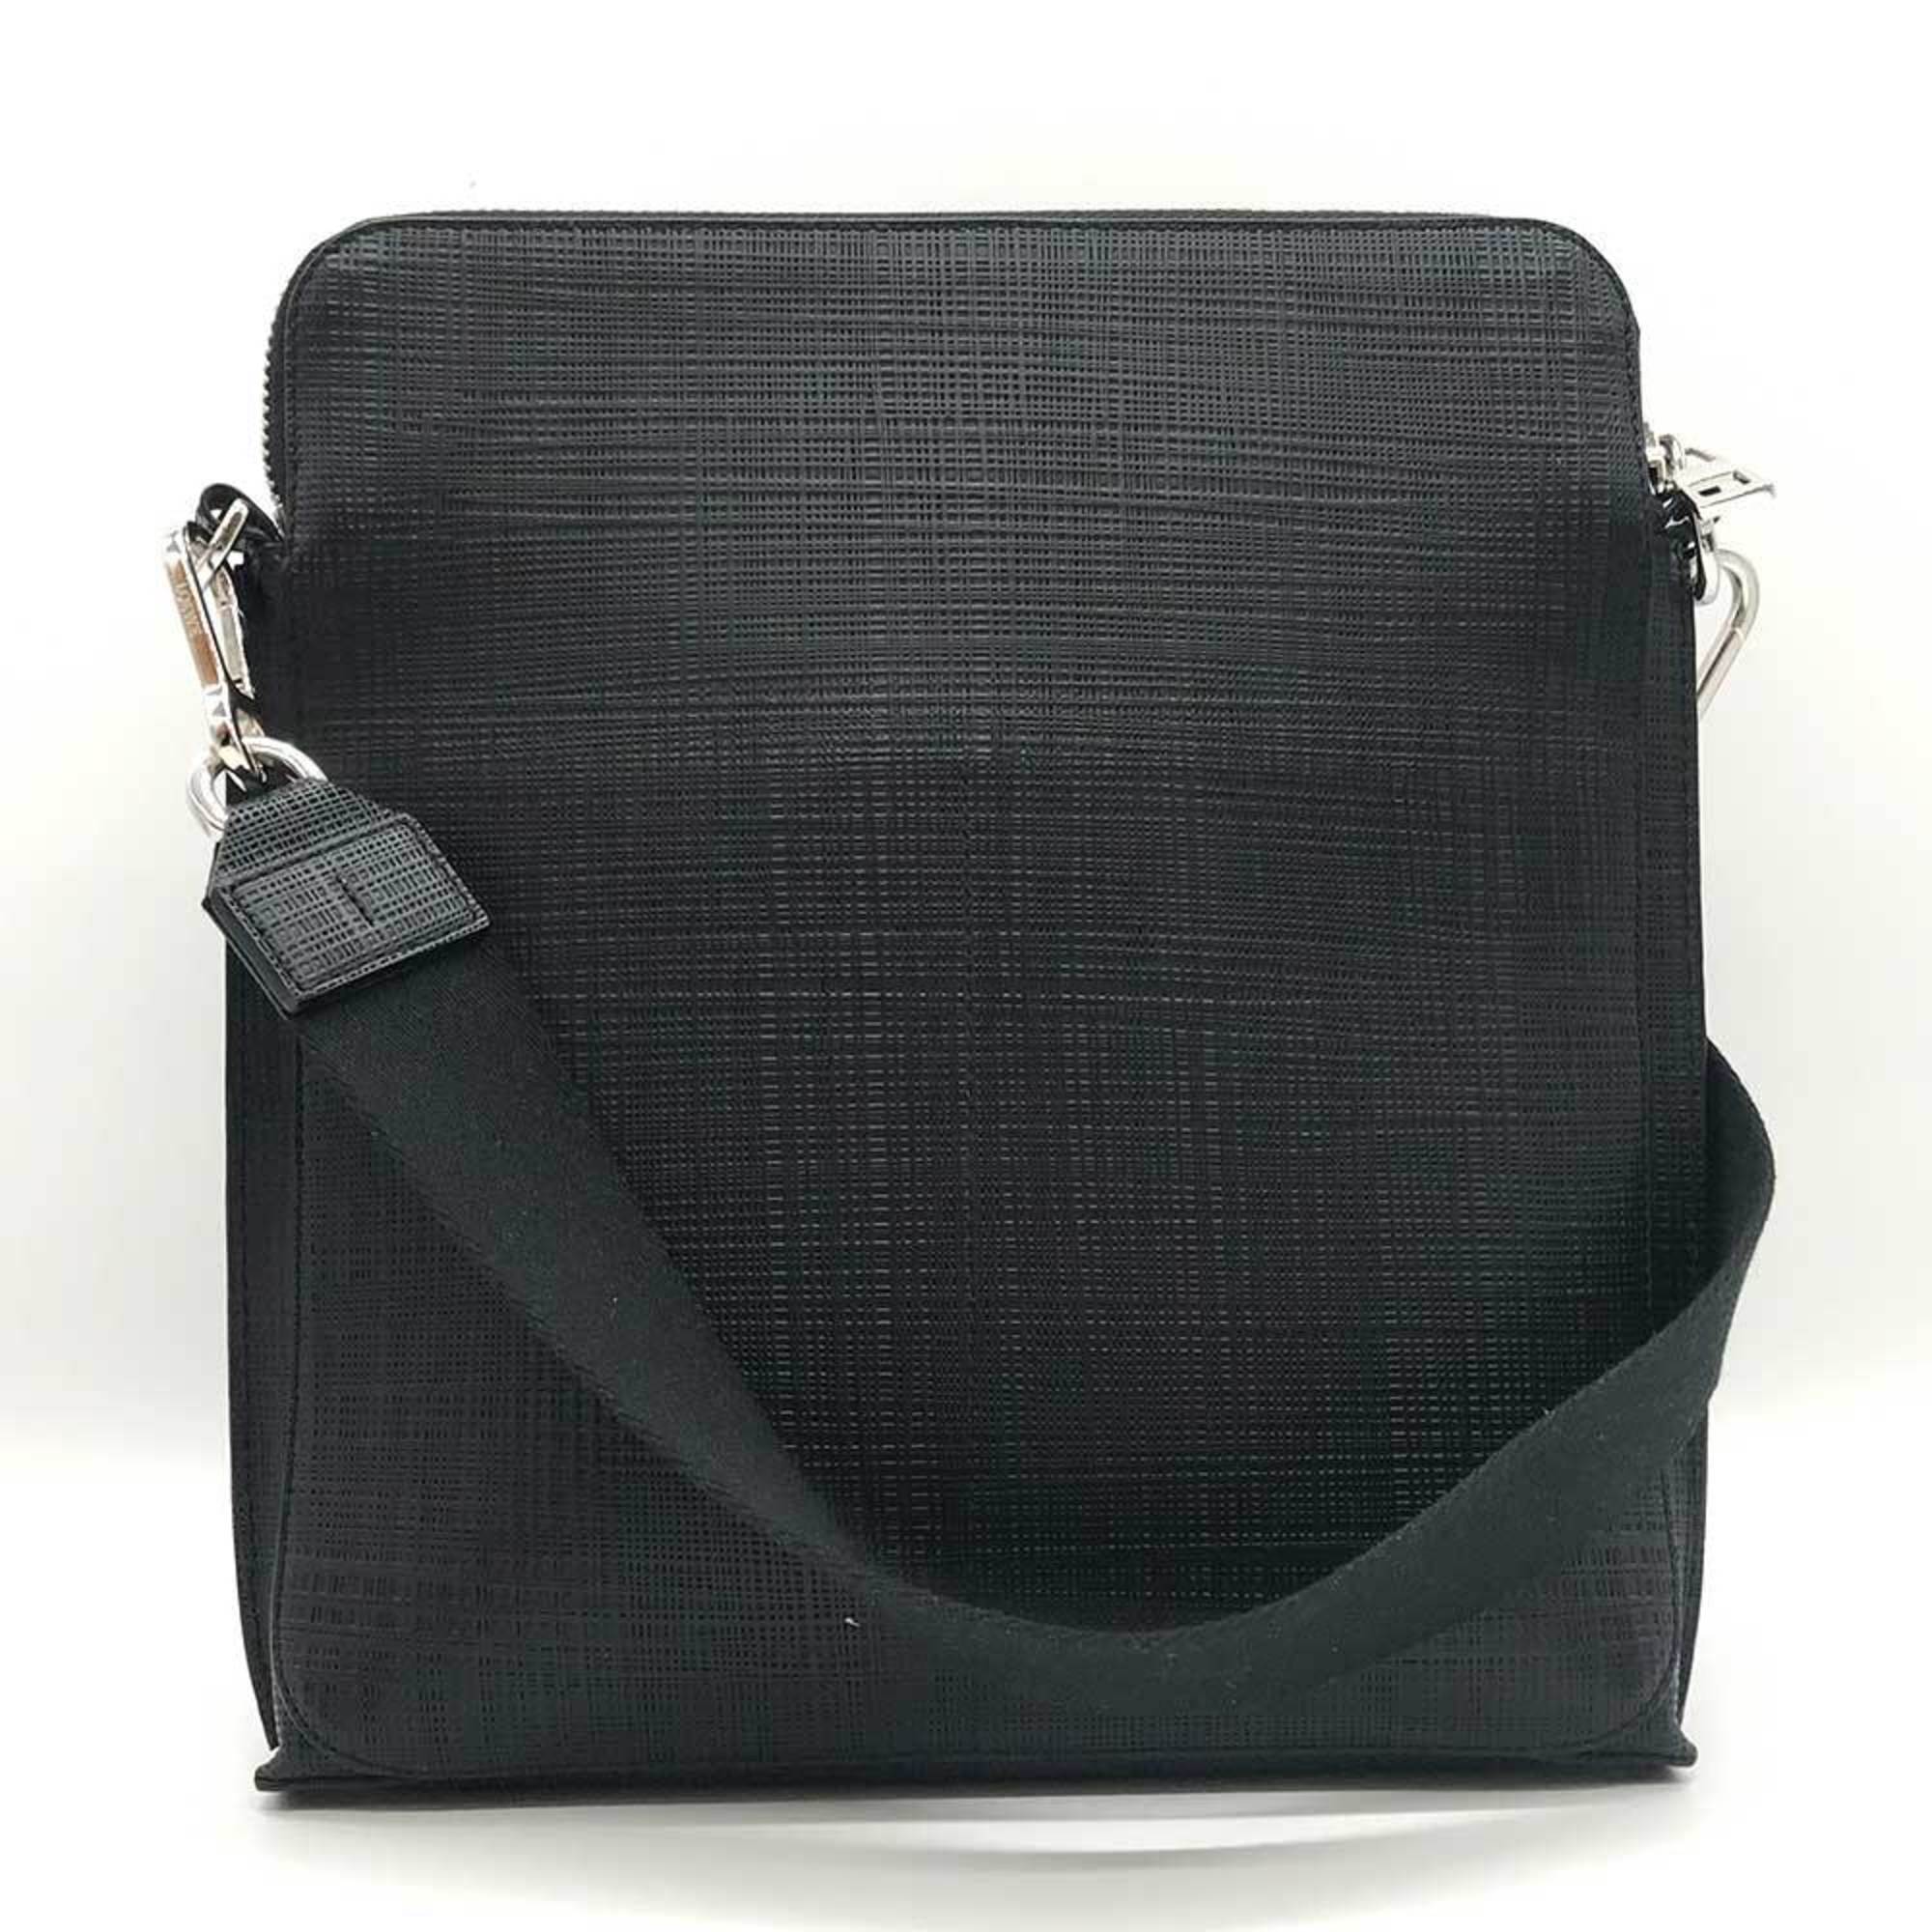 LOEWE Bag Goya Shoulder Black Square Leather